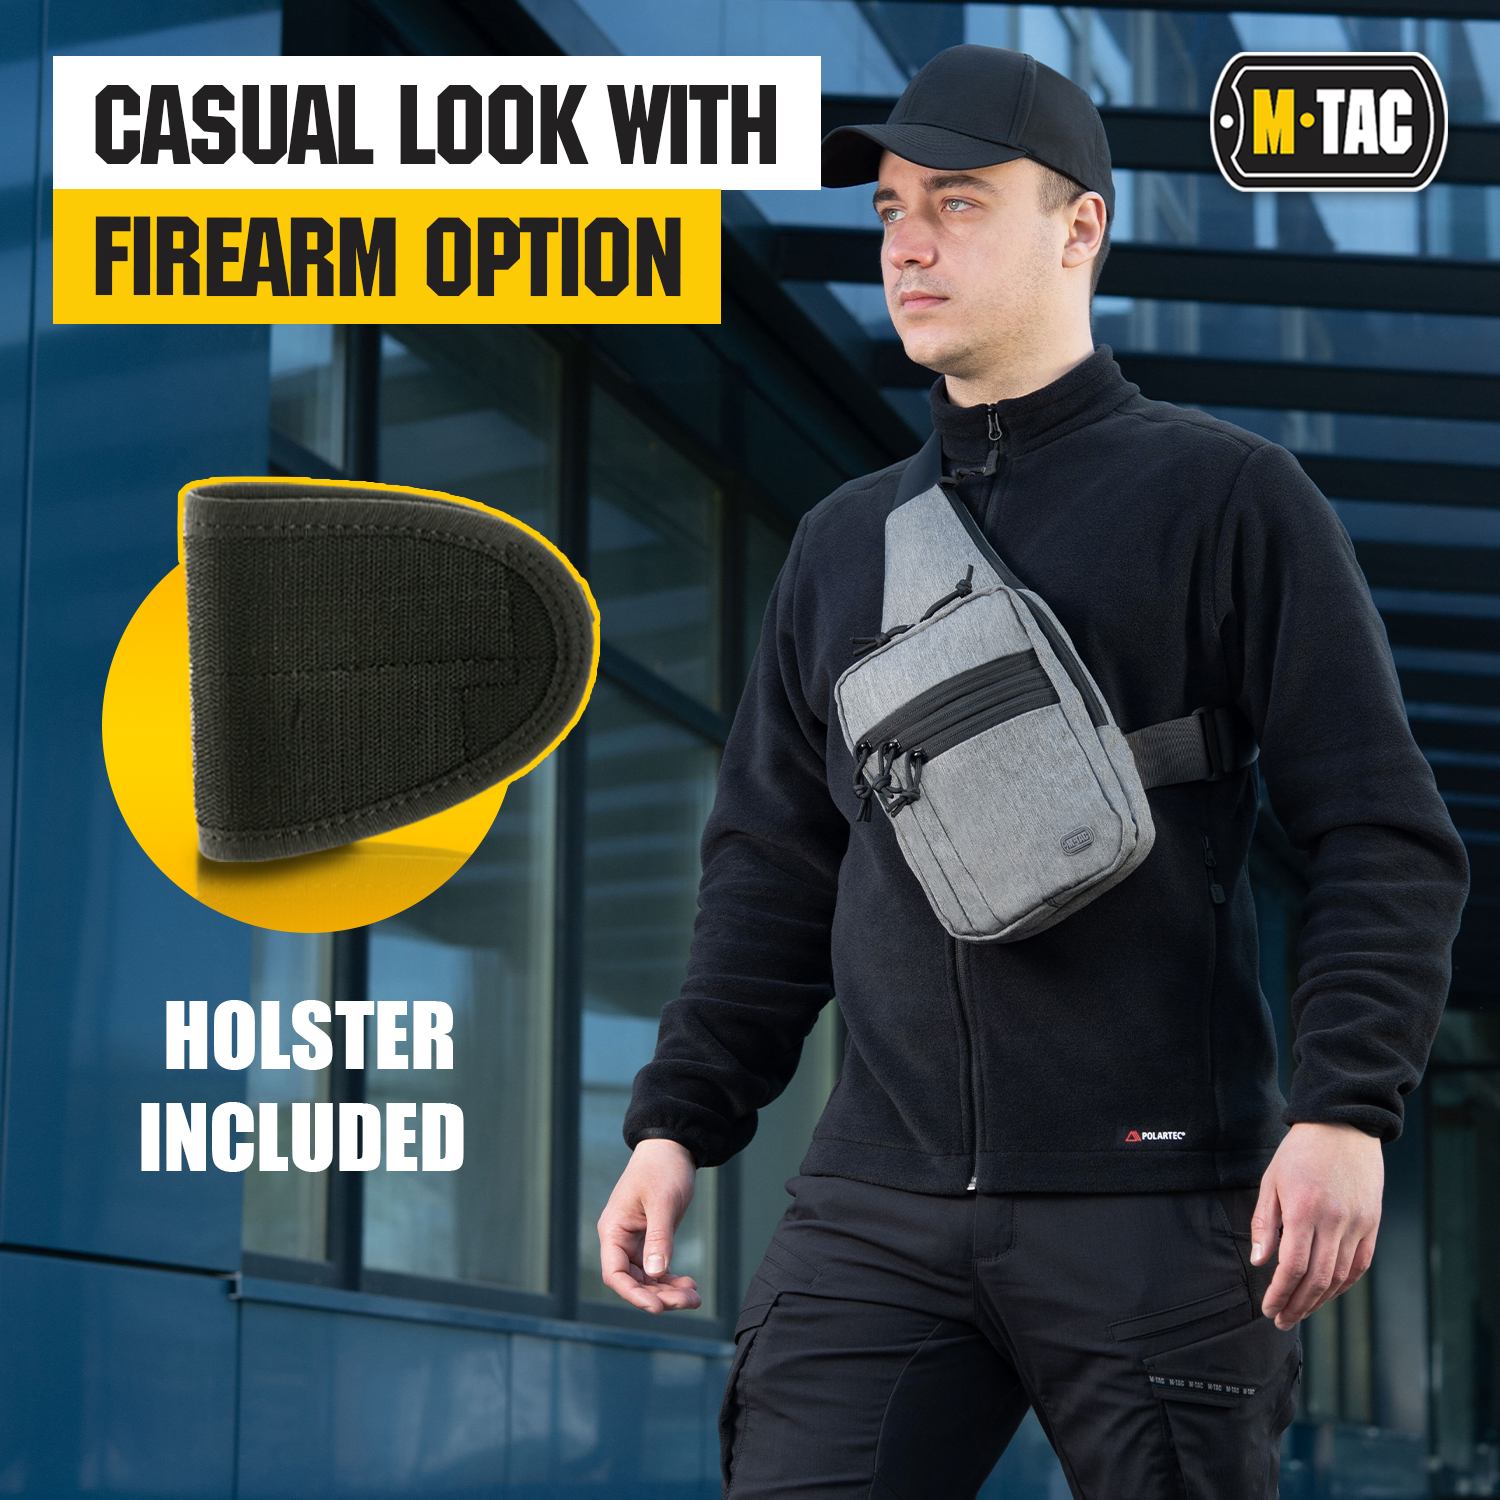 M-Tac Tactical Bag Shoulder Chest Pack with Sling